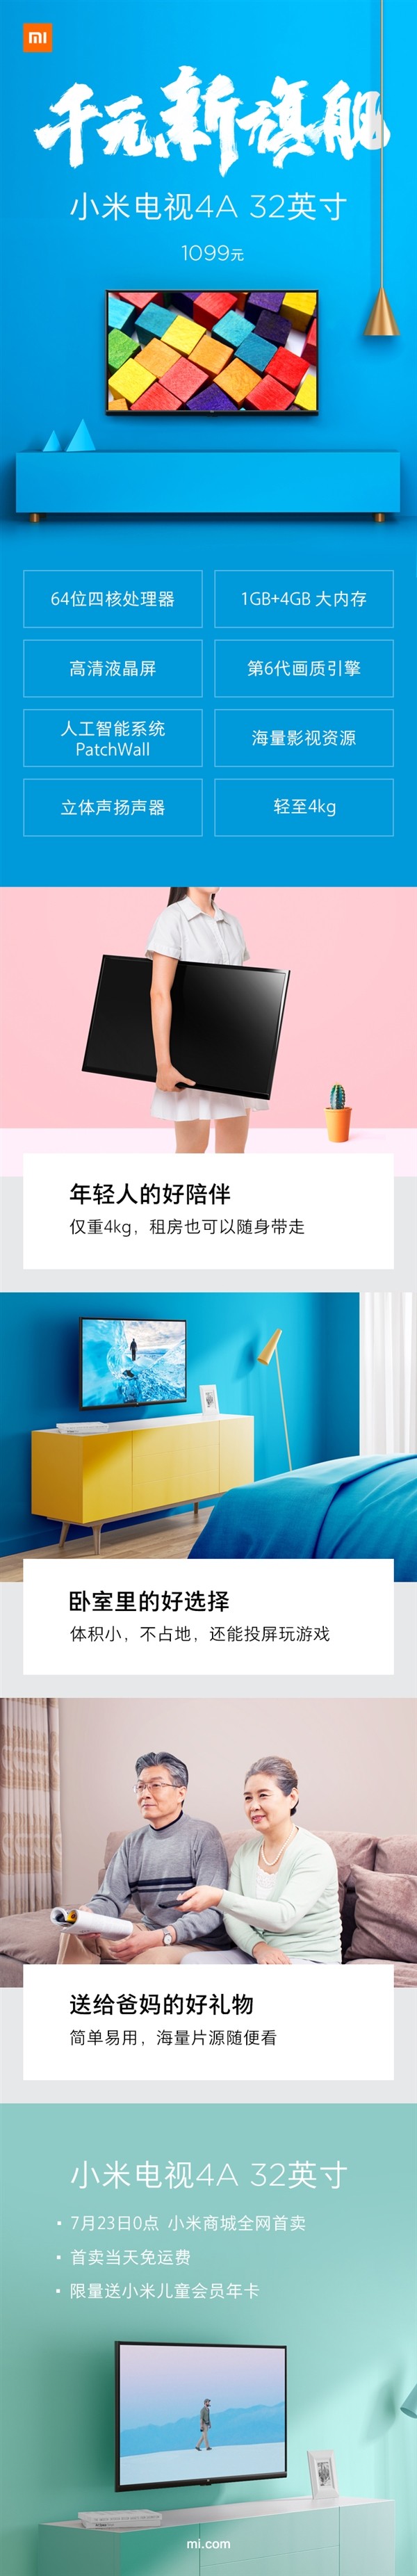 Xiaomi Mi TV 4A ra mắt giá 163 USD ảnh 2